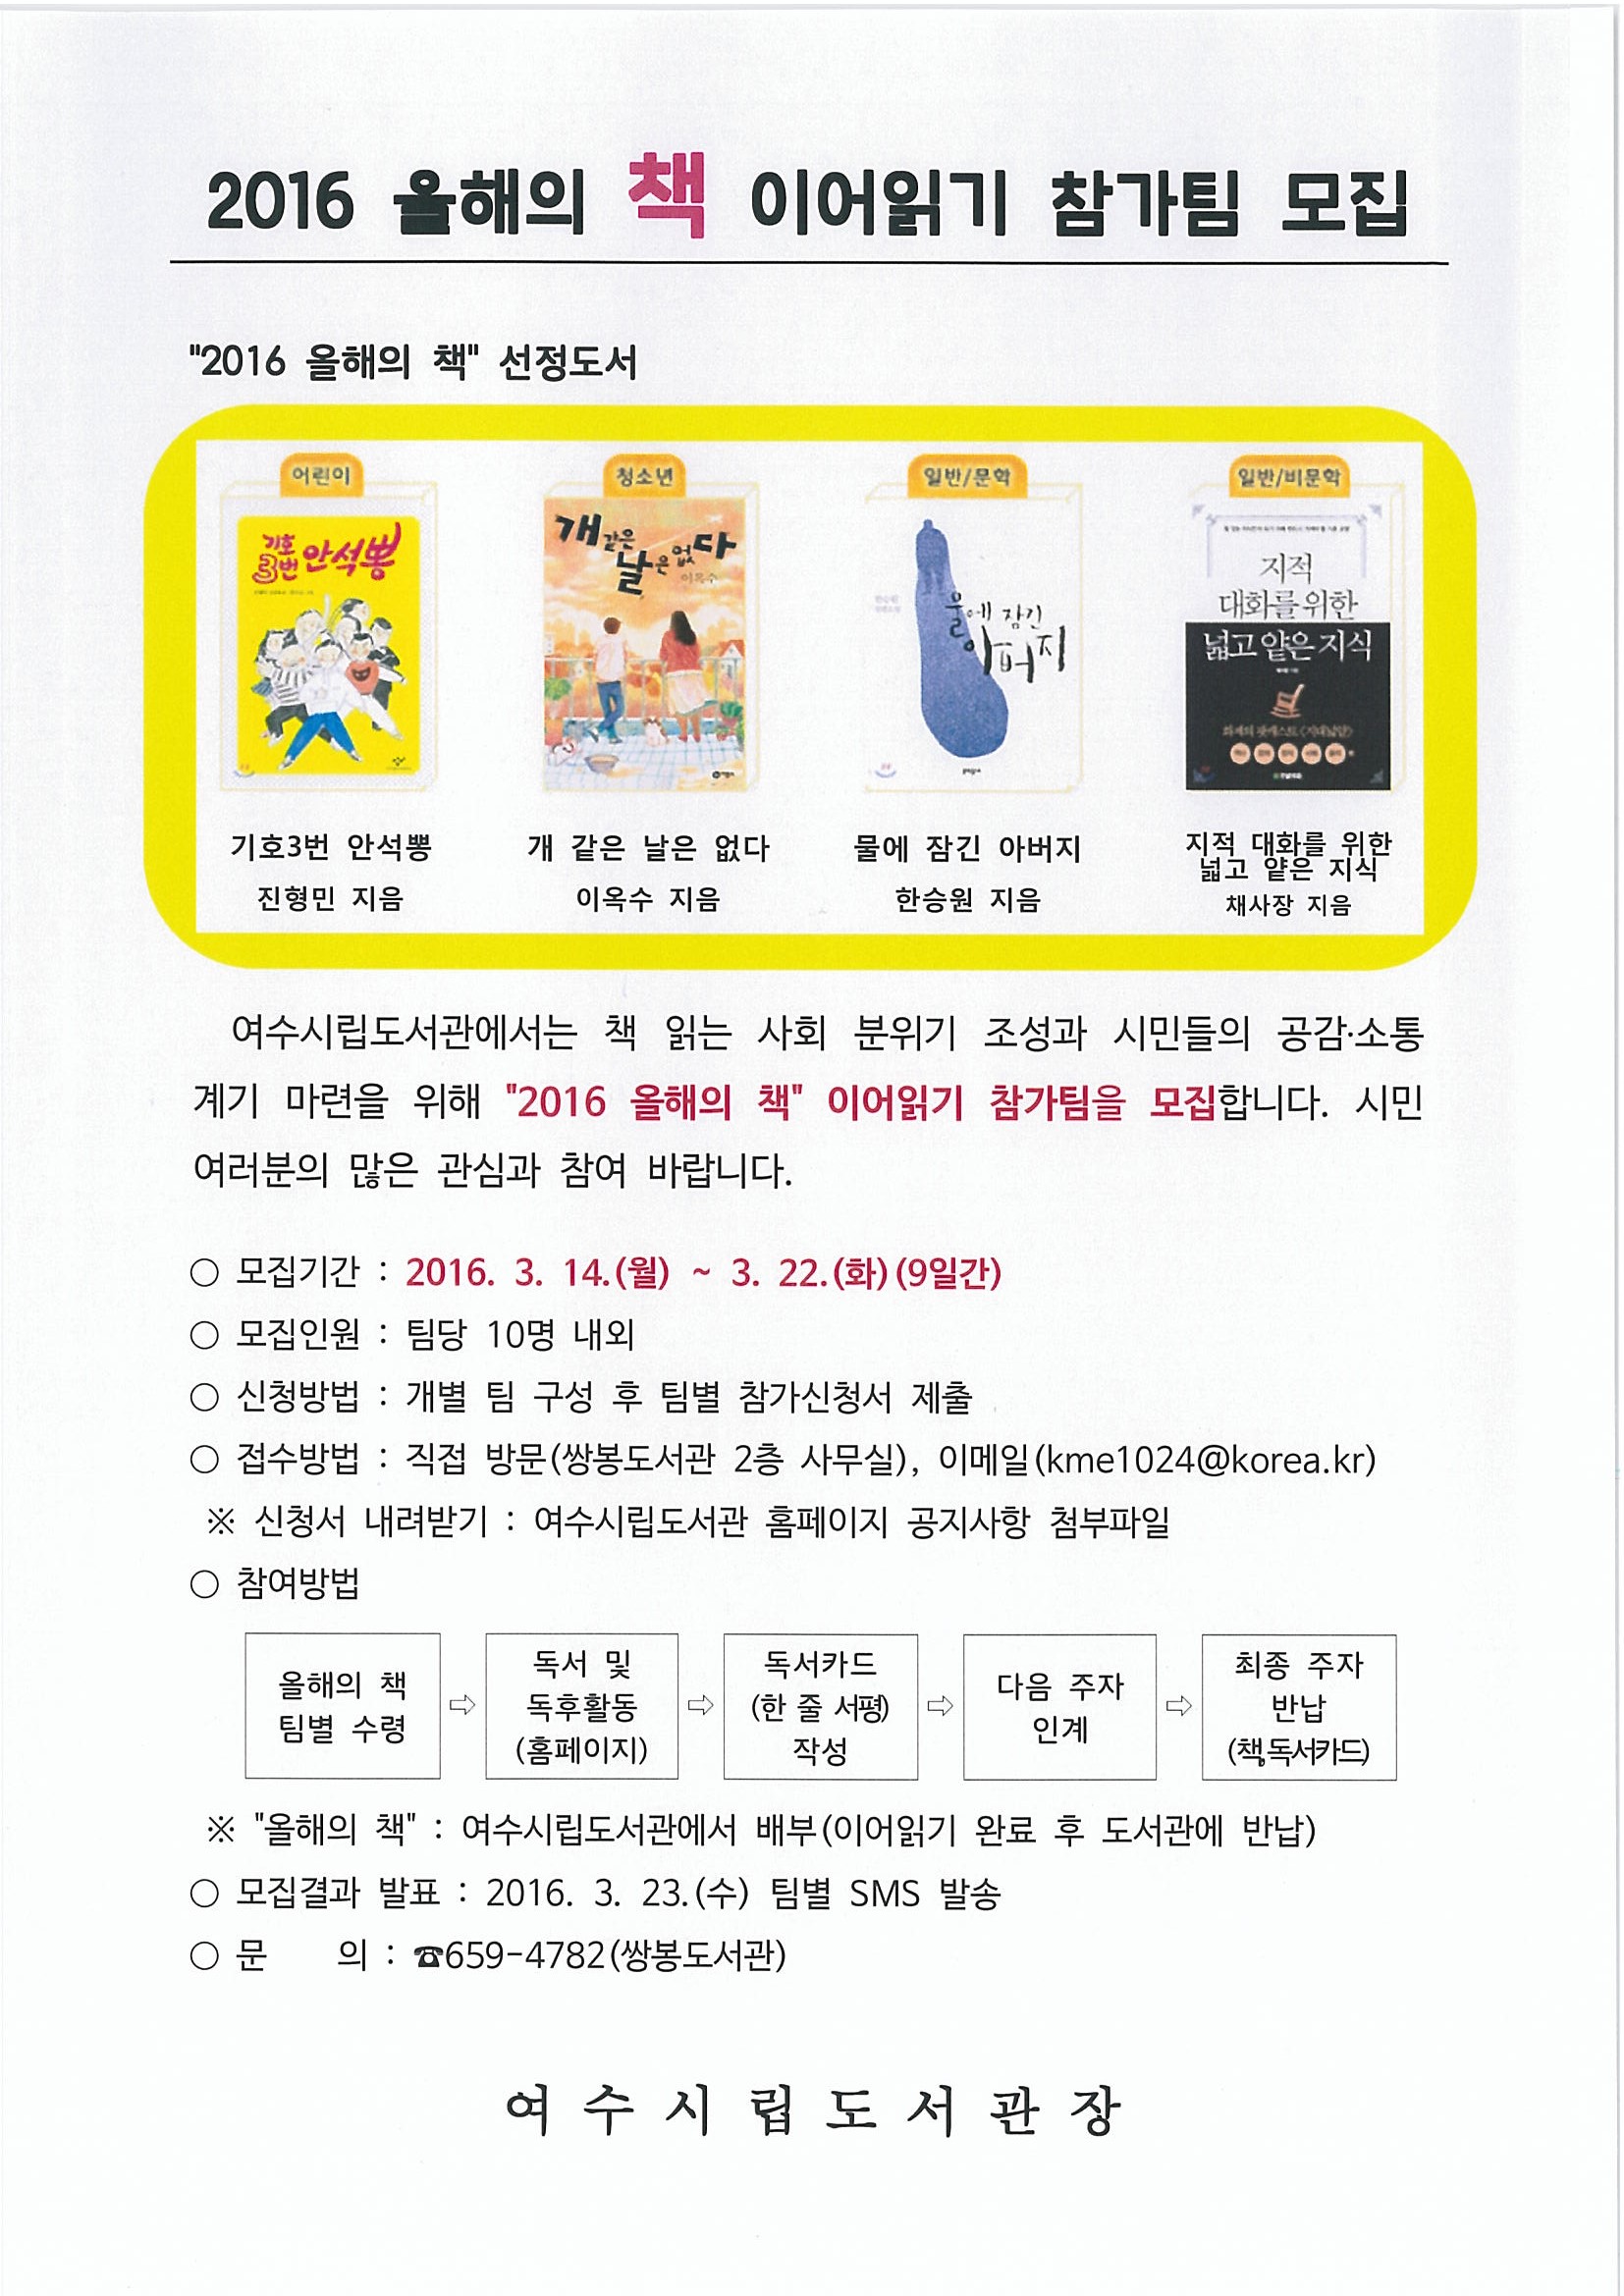 "2016 올해의 책" 이어읽기 참가팀 모집